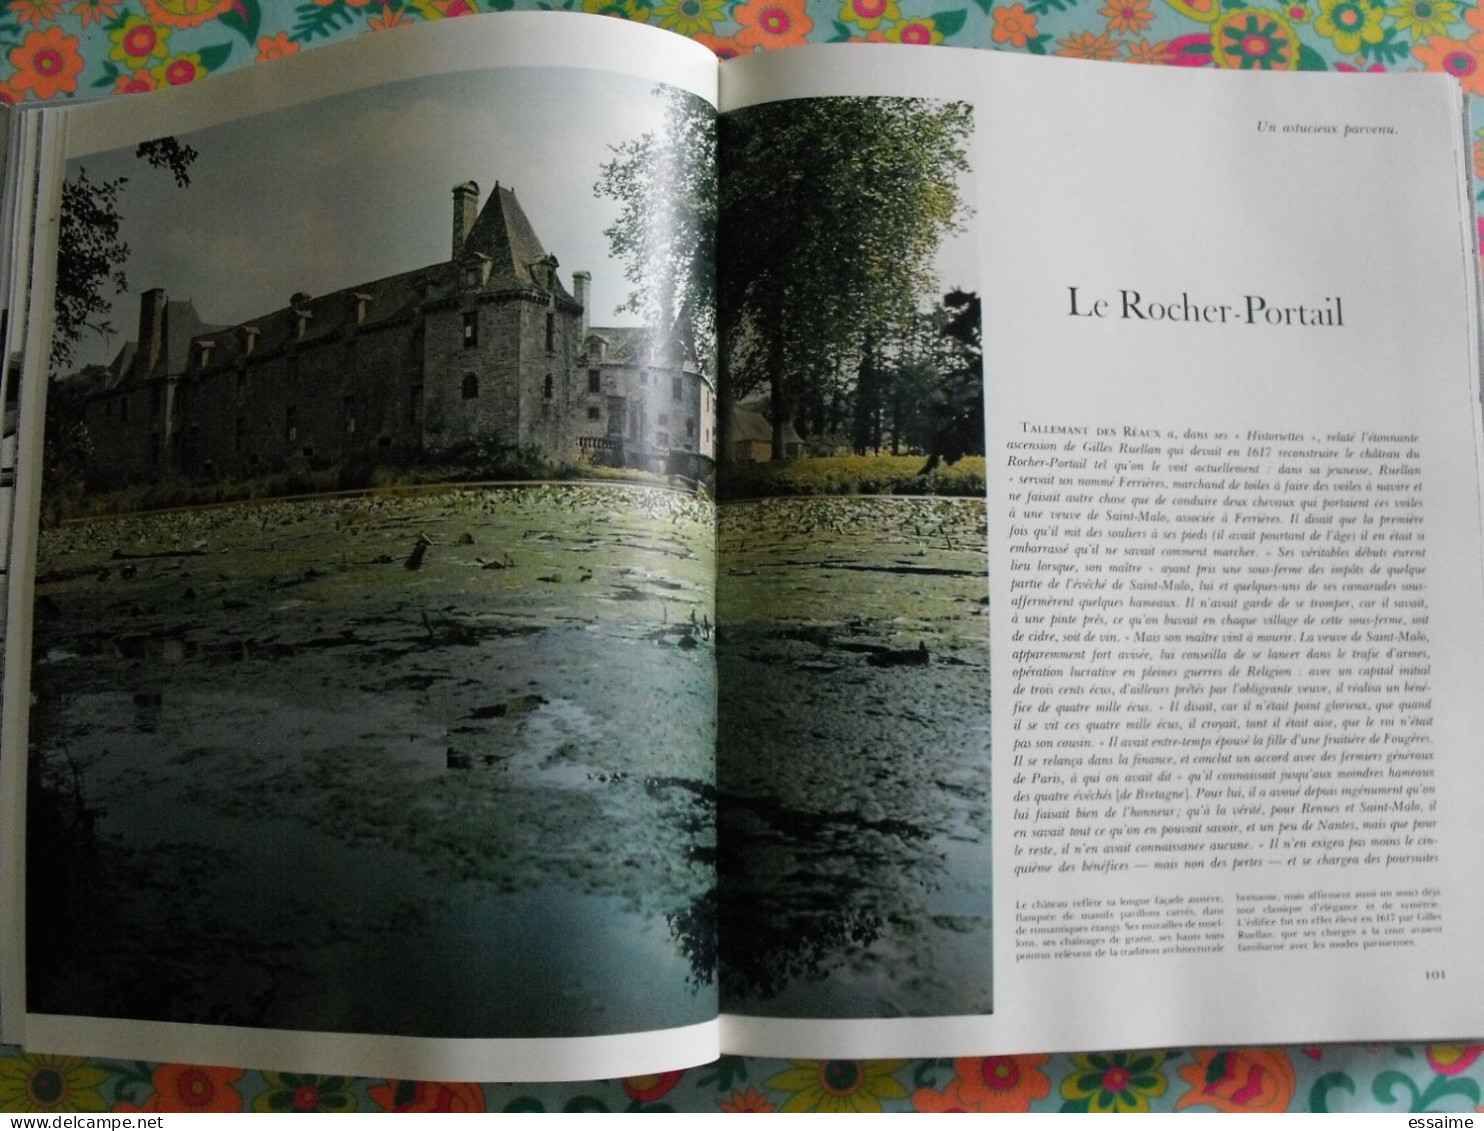 merveilles des châteaux de Bretagne et de Vendée. Hachette 1970. bretagne nantes poitou vendée. bien illustré